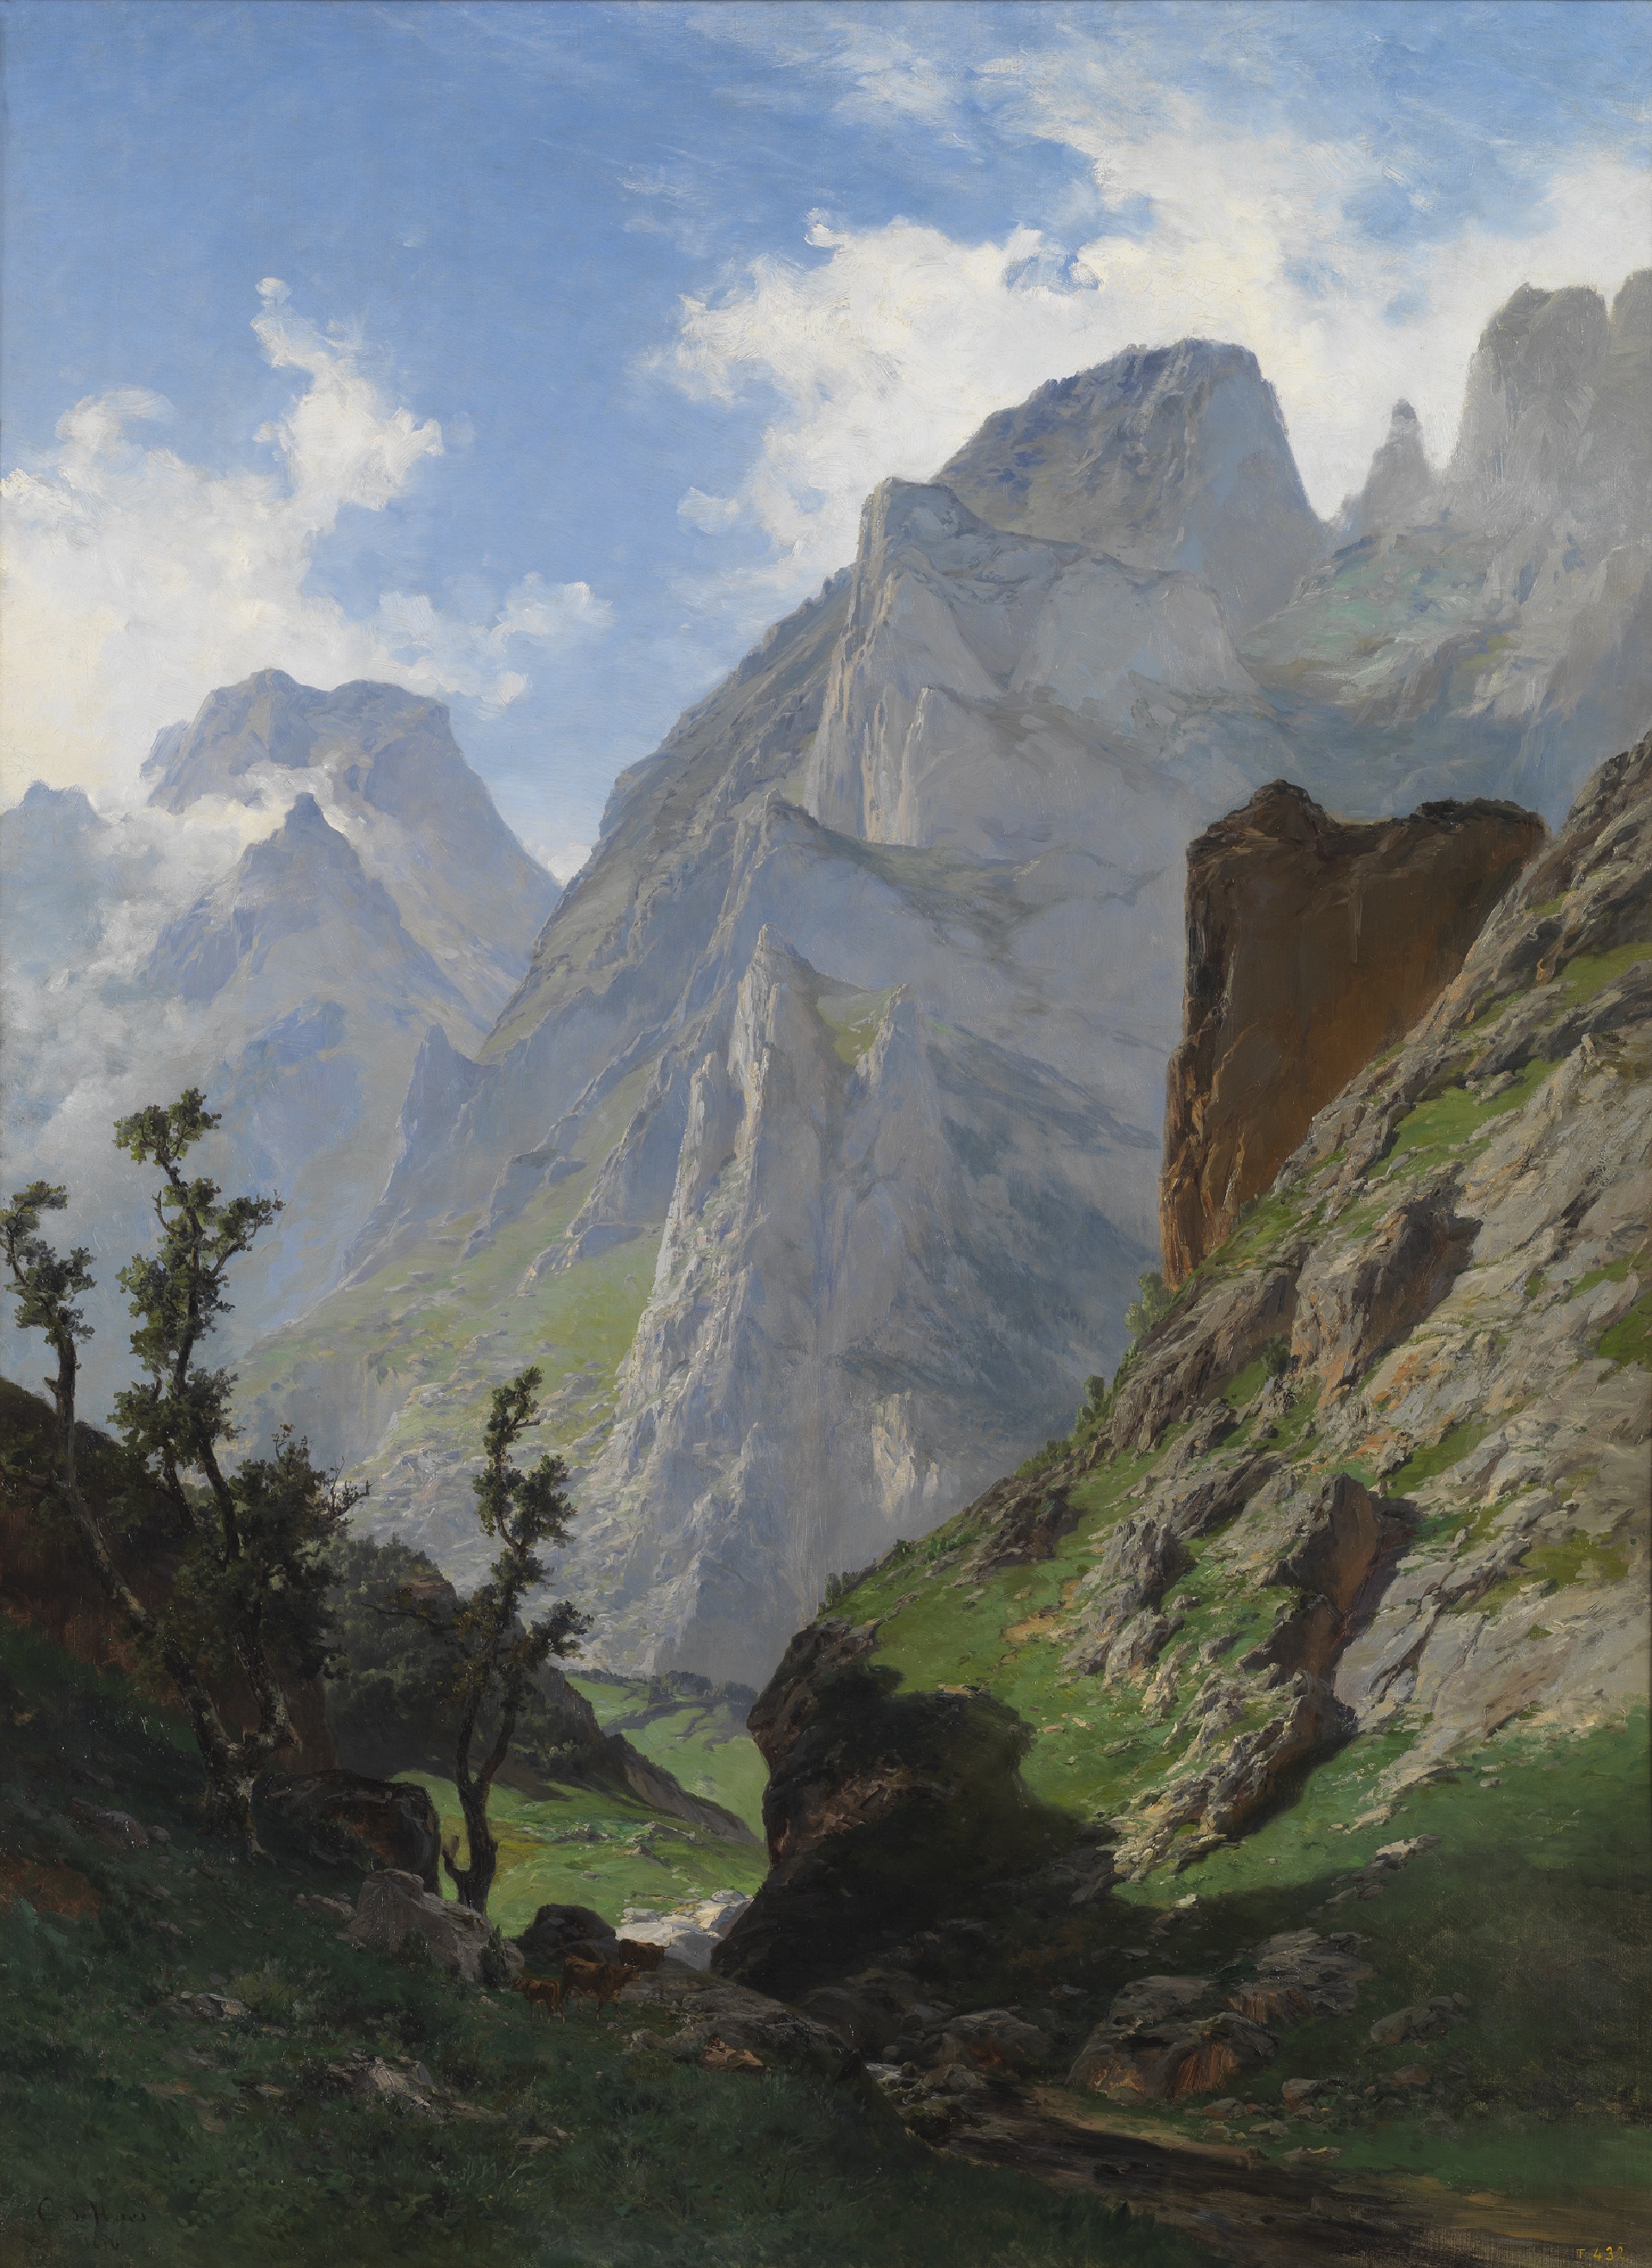 “La Canal de Mancorbo en los Picos de Europa” (1876) de Carlos de Haes